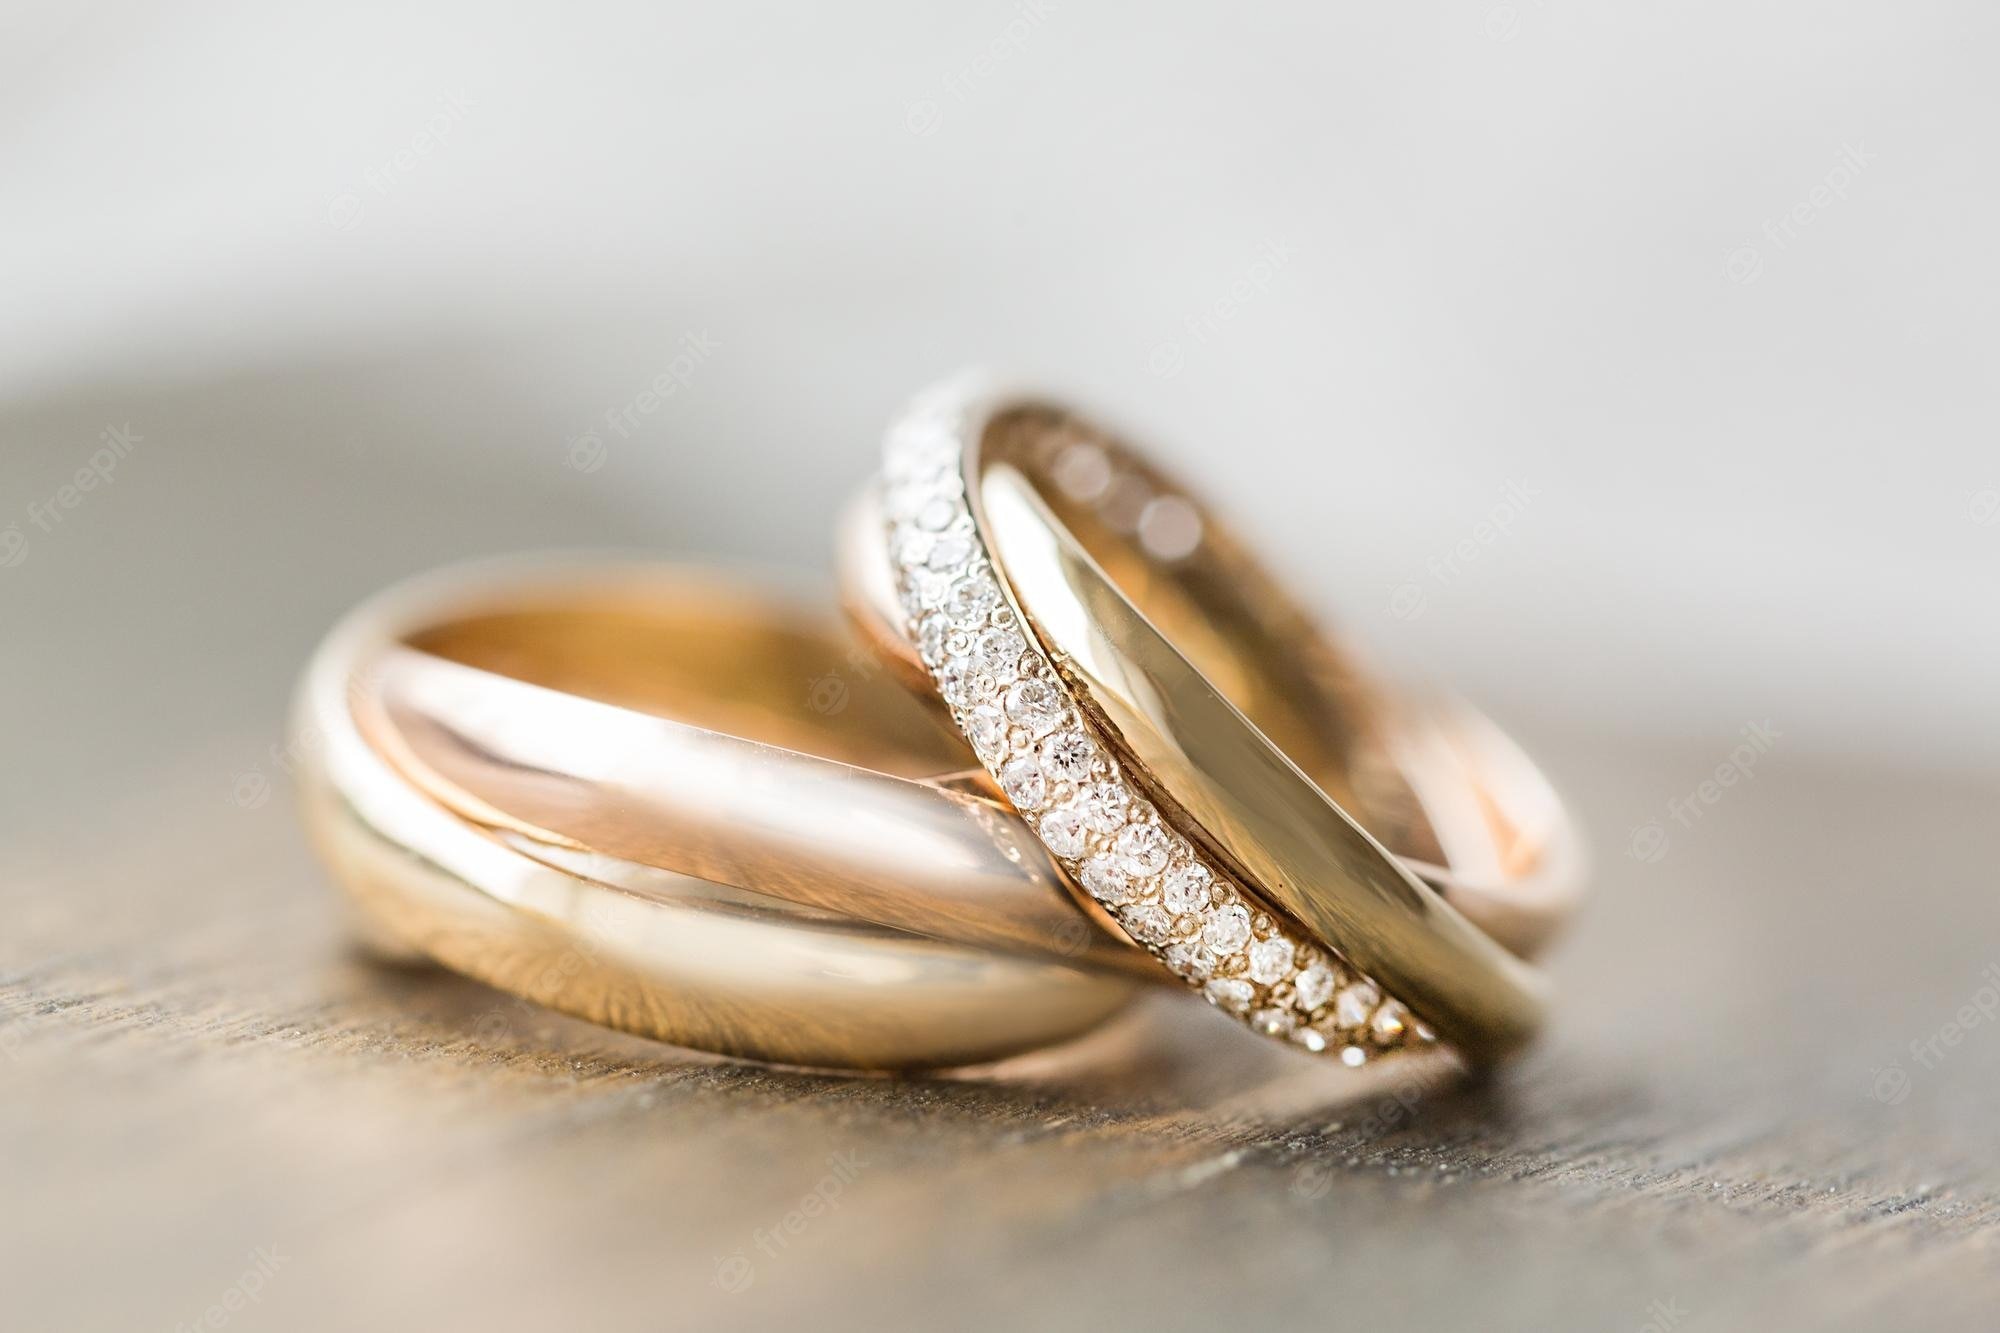 Понравились кольца. Свадебные кольца. Кольца на свадьбу обручальные. Обручальное кольцо для девушки. Кольцо к обручальному кольцу.